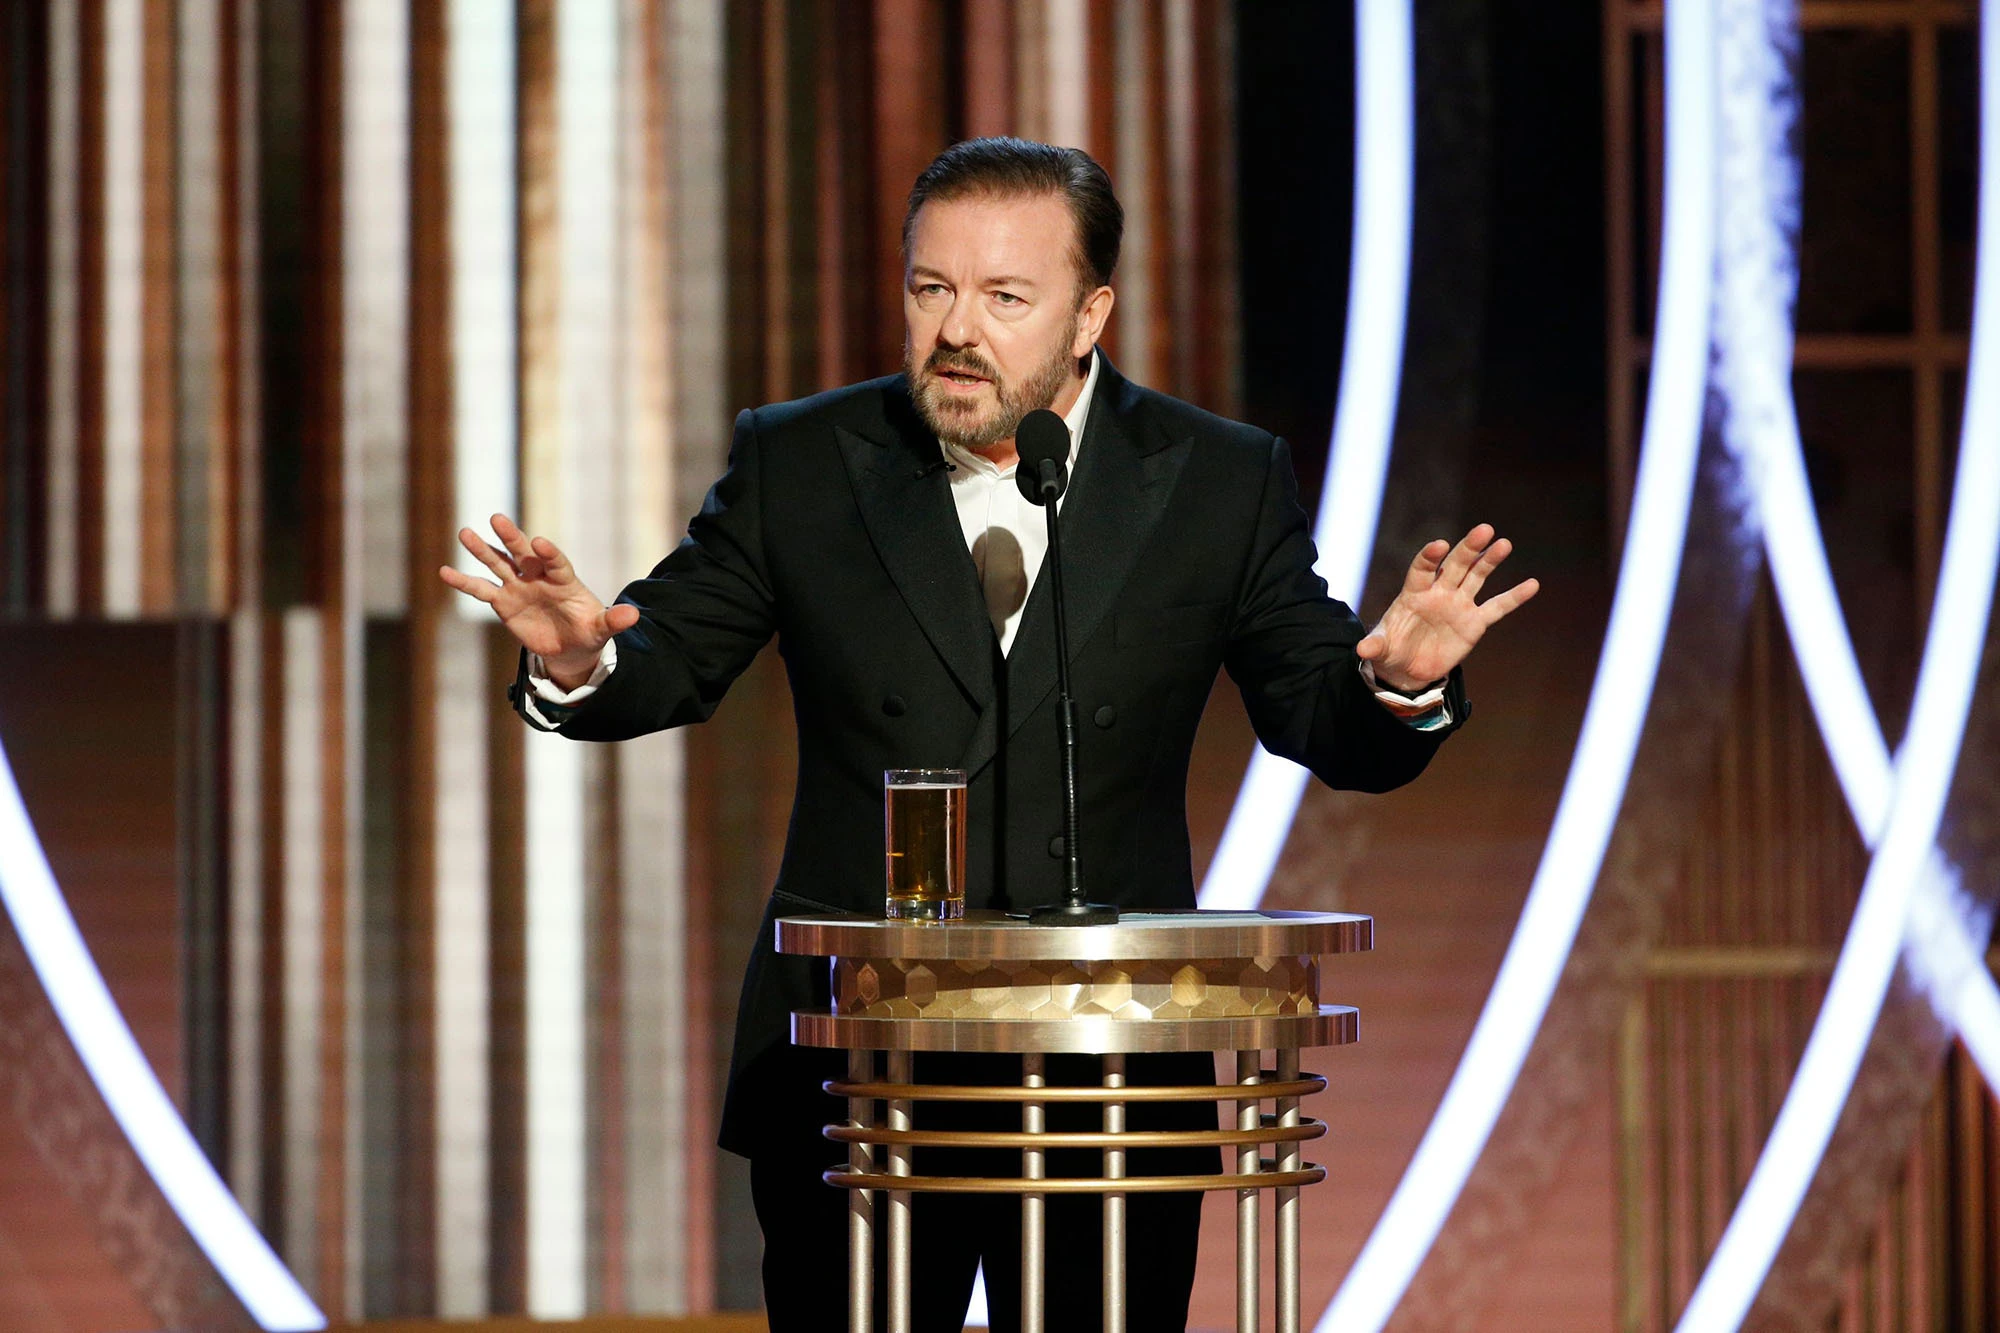 Gervais'ten Oscar tokatıyla ilgili ilk yorum: Eşinin saçıyla ilgili değil eşinin erkek arkadaşıyla ilgili şaka yapardım